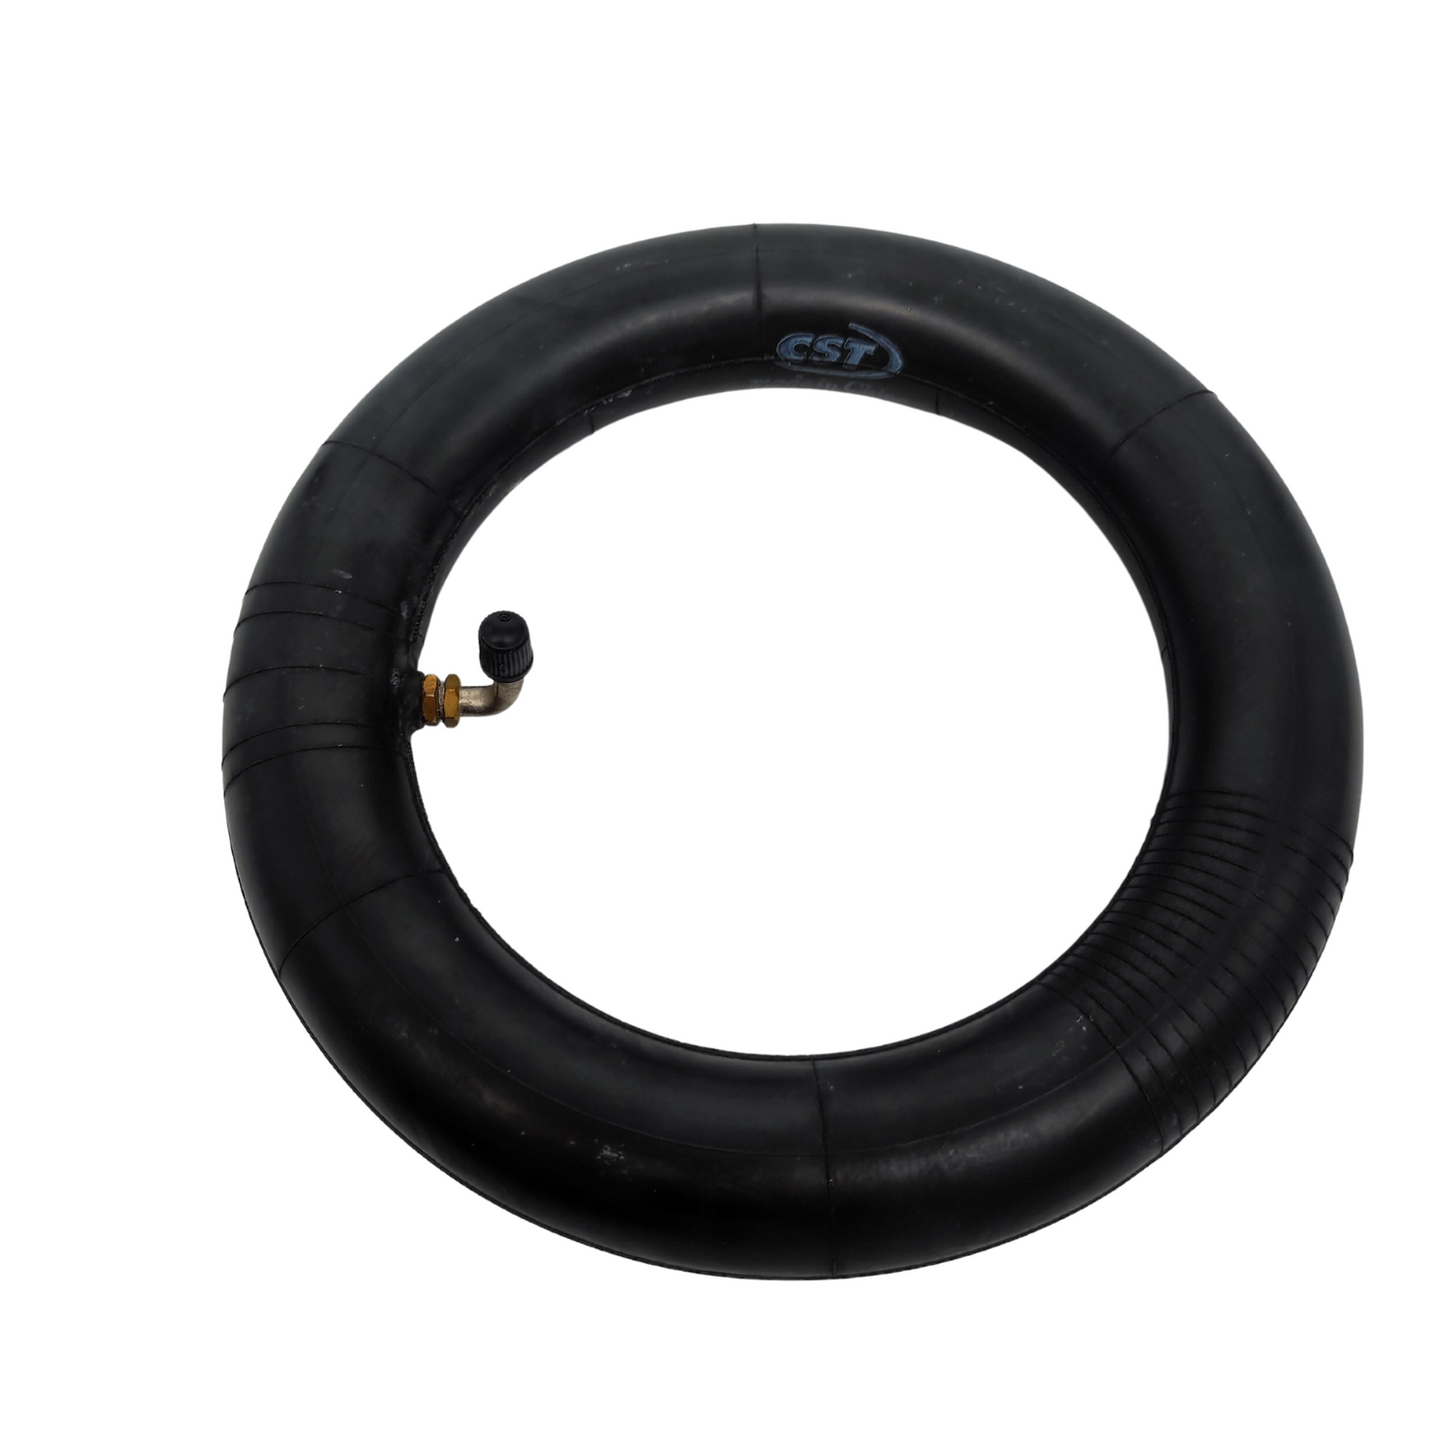 CST 10x2,5 Zoll  Reifen mit Schlauch Set Hochwertige Qualität für eScooter Fahrrad Kinderwagen